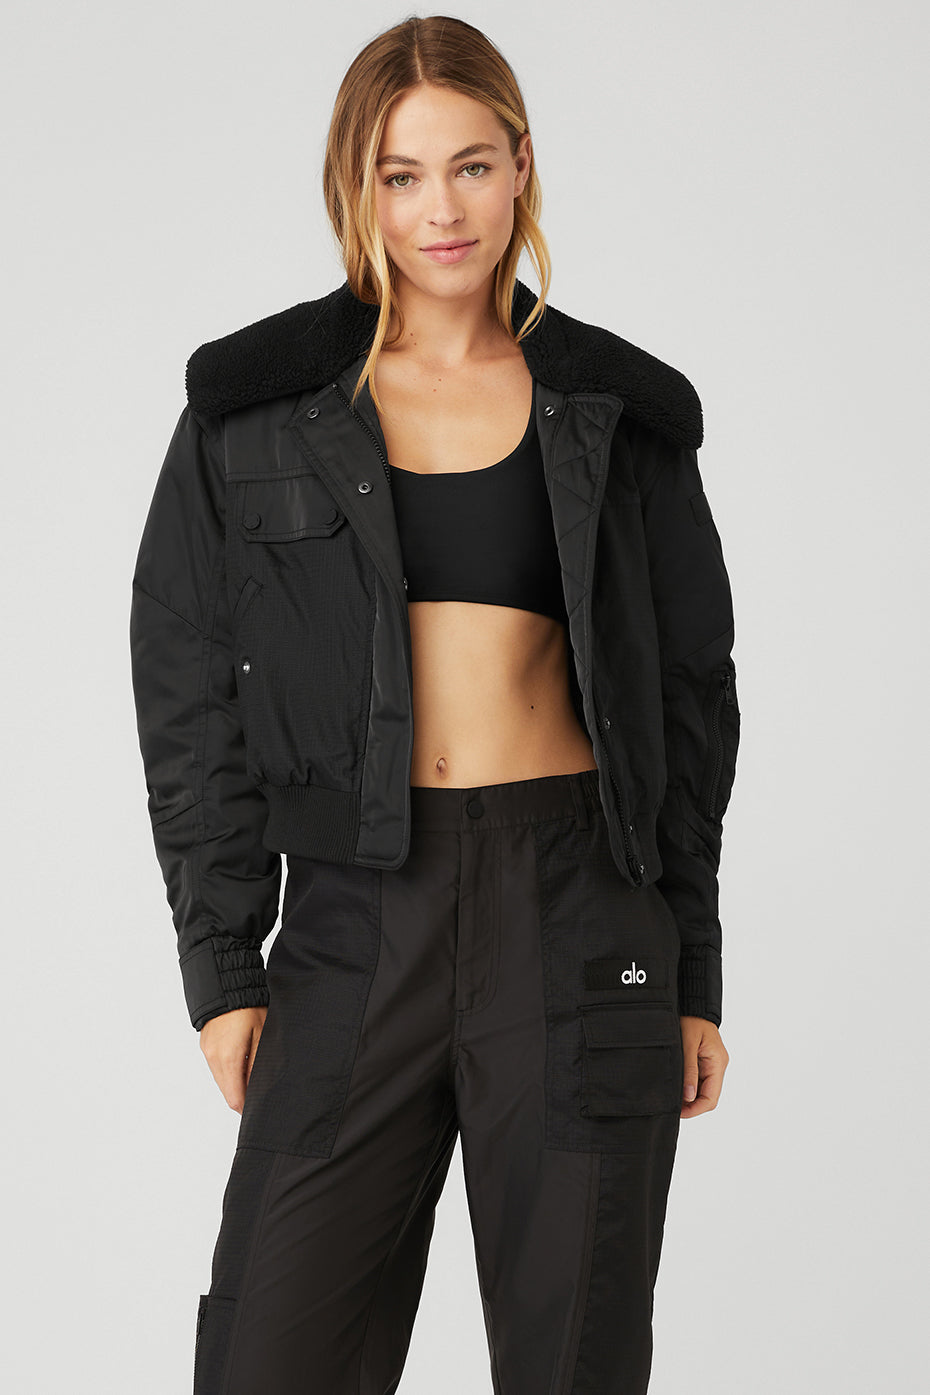 ALO Yoga, Jackets & Coats, Alo Yoga It Girl Oversized Bomber Jacket